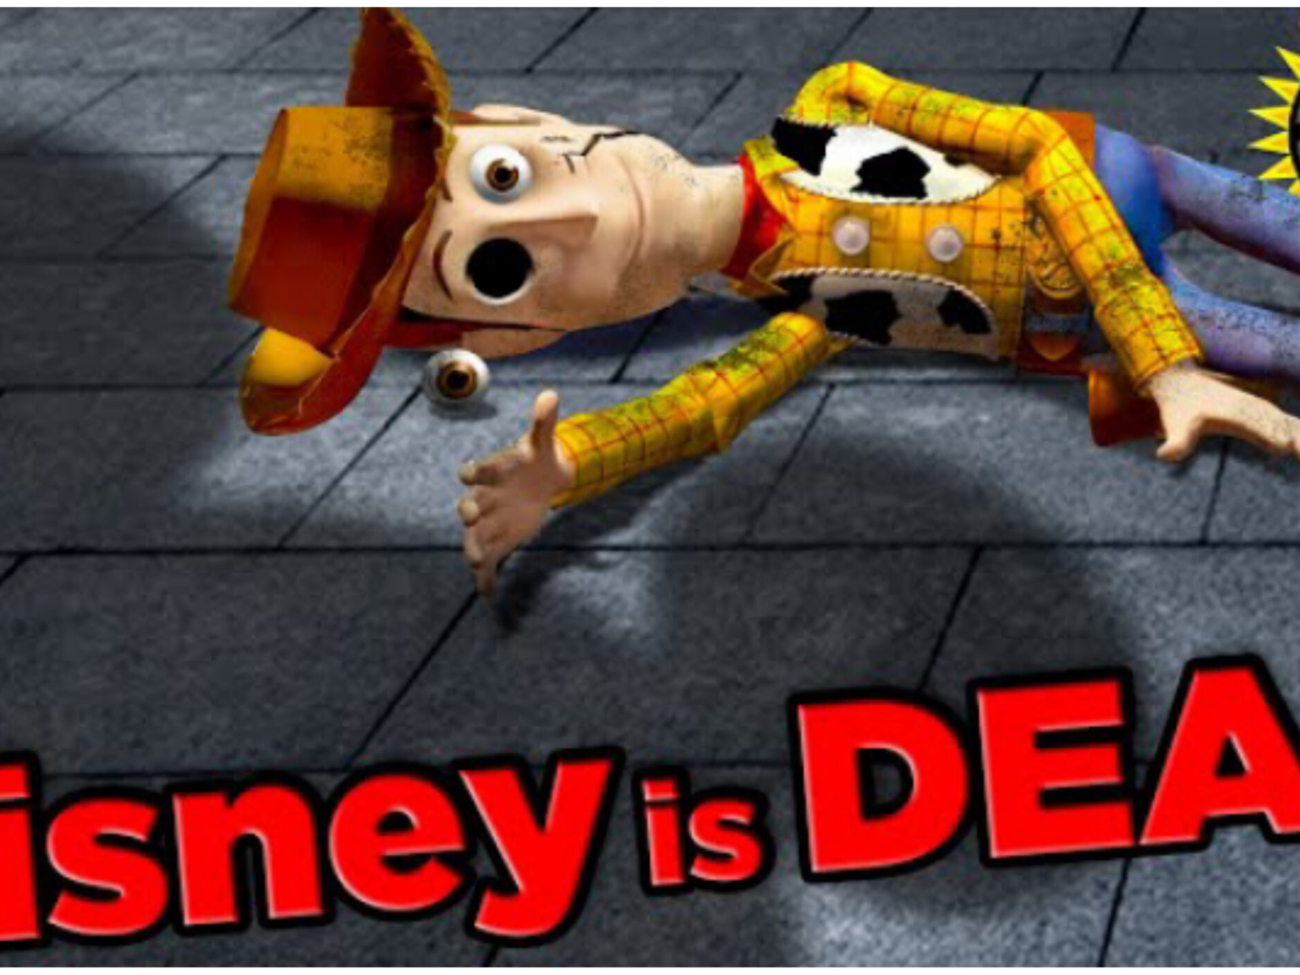 disney is dead